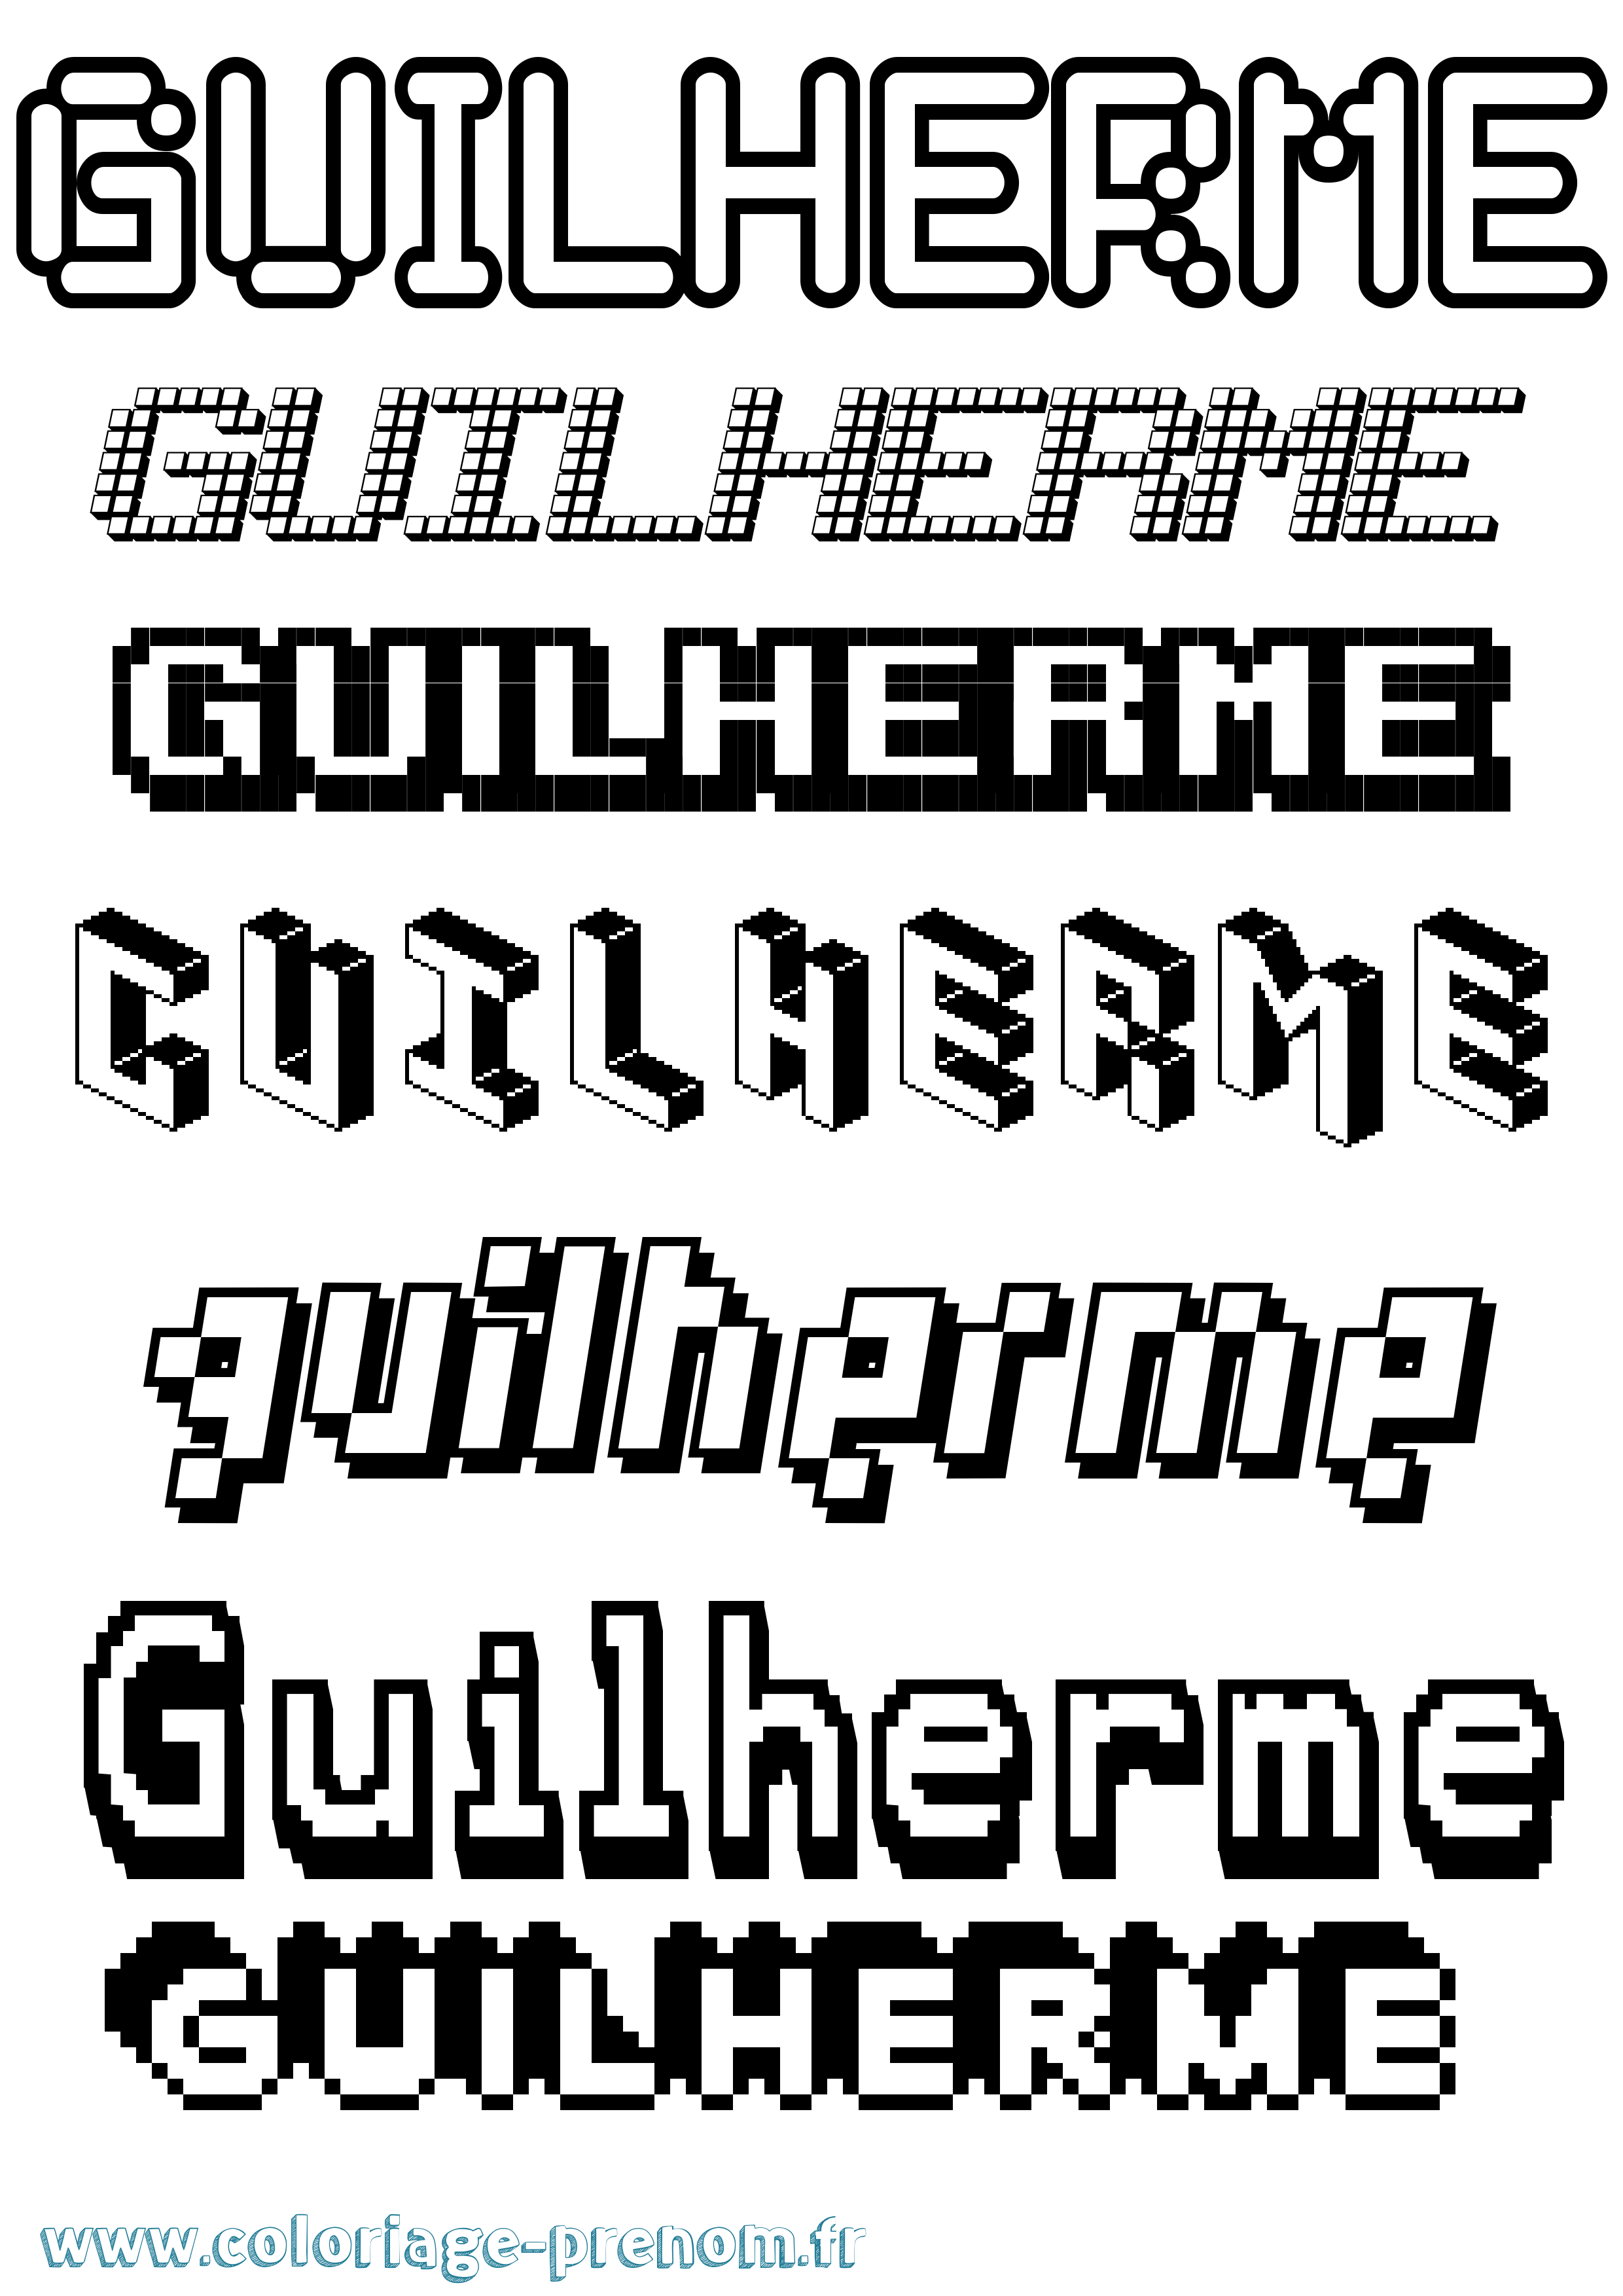 Coloriage prénom Guilherme Pixel